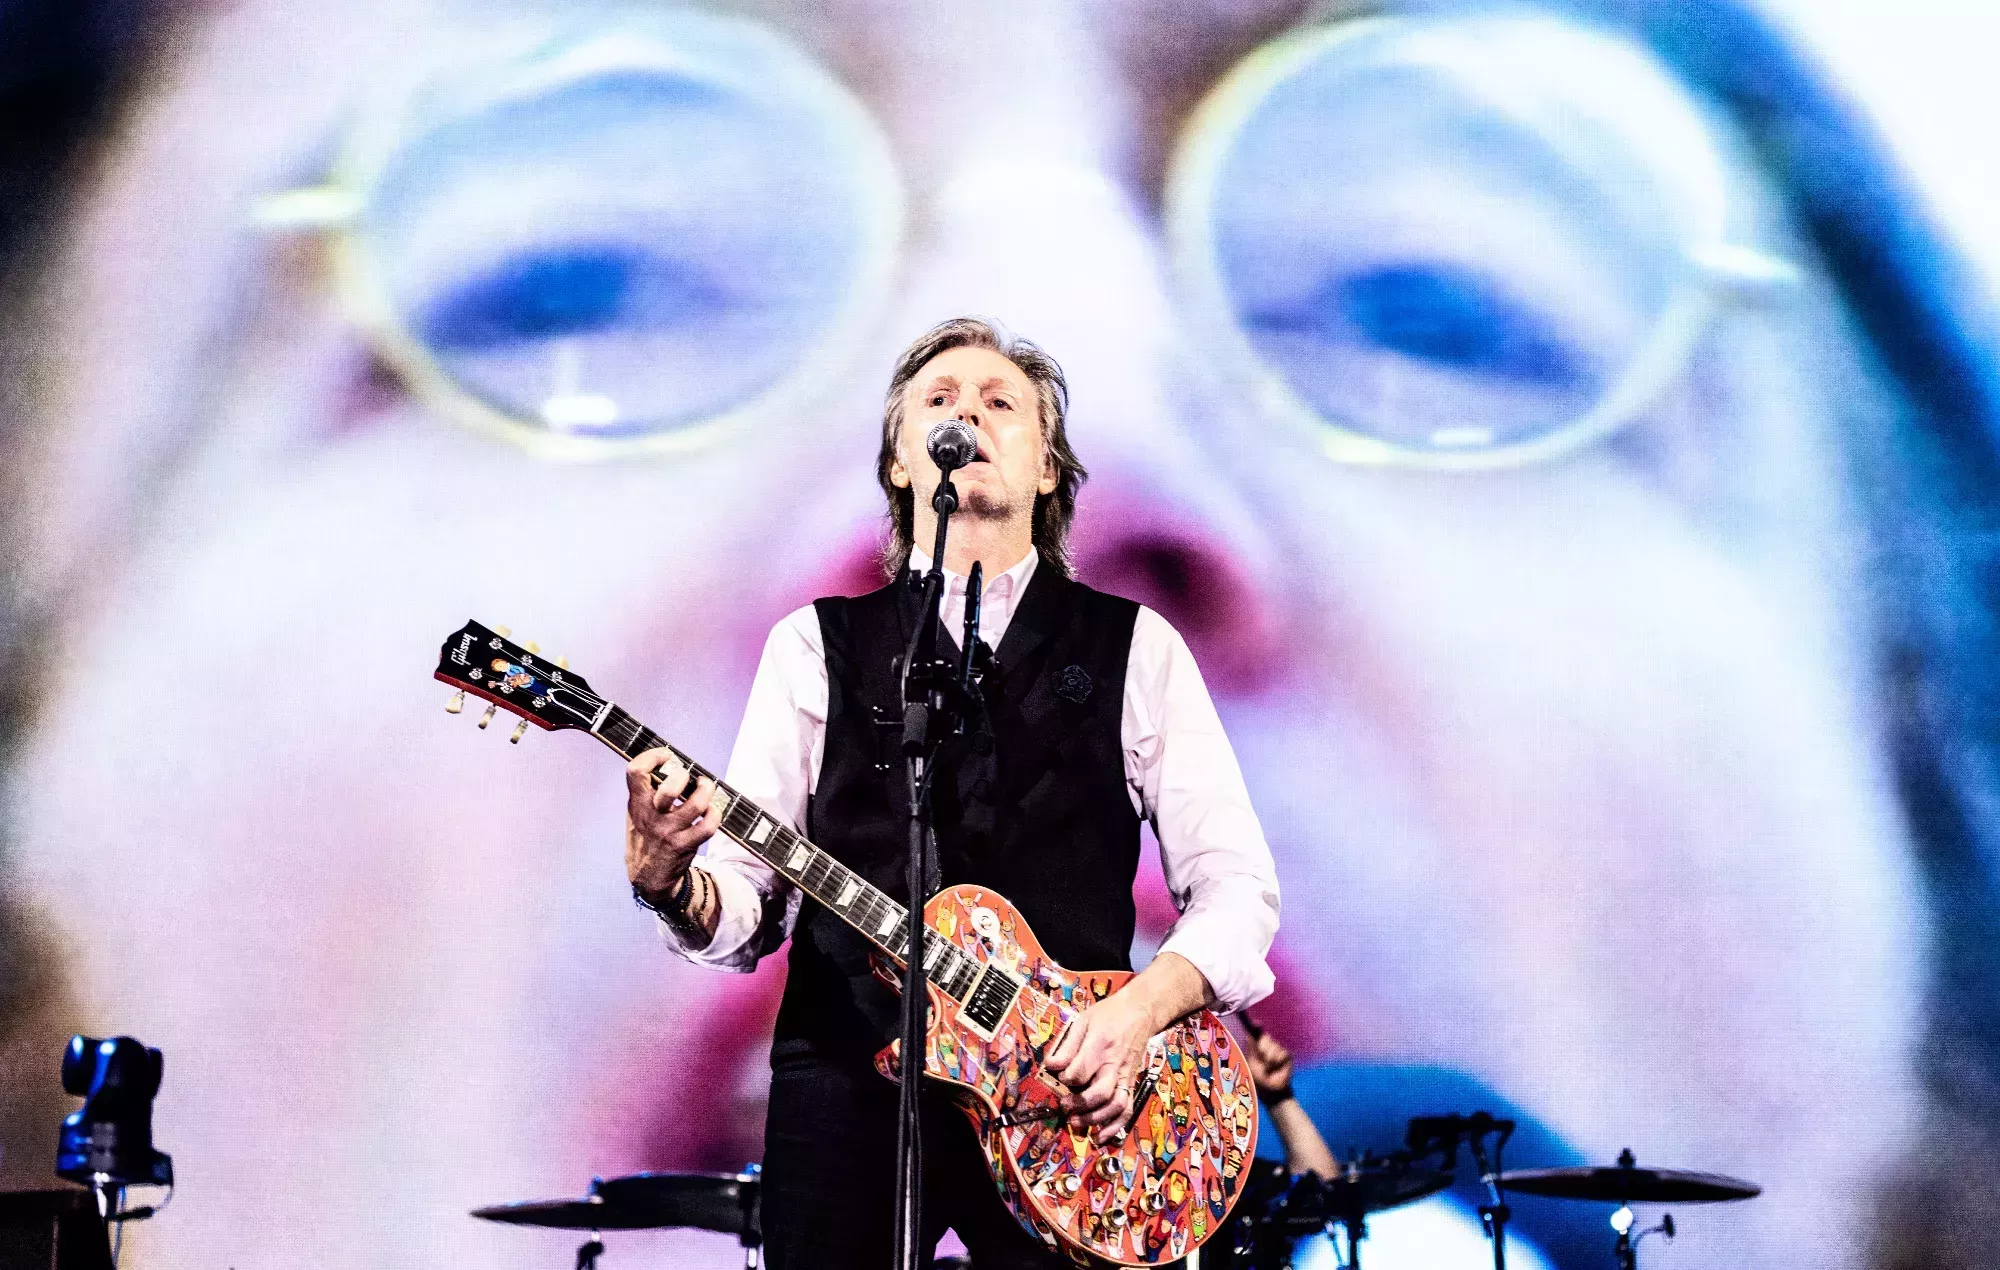 ¿Preparado para Glastonbury? Mira estas fotos exclusivas de Paul McCartney en directo